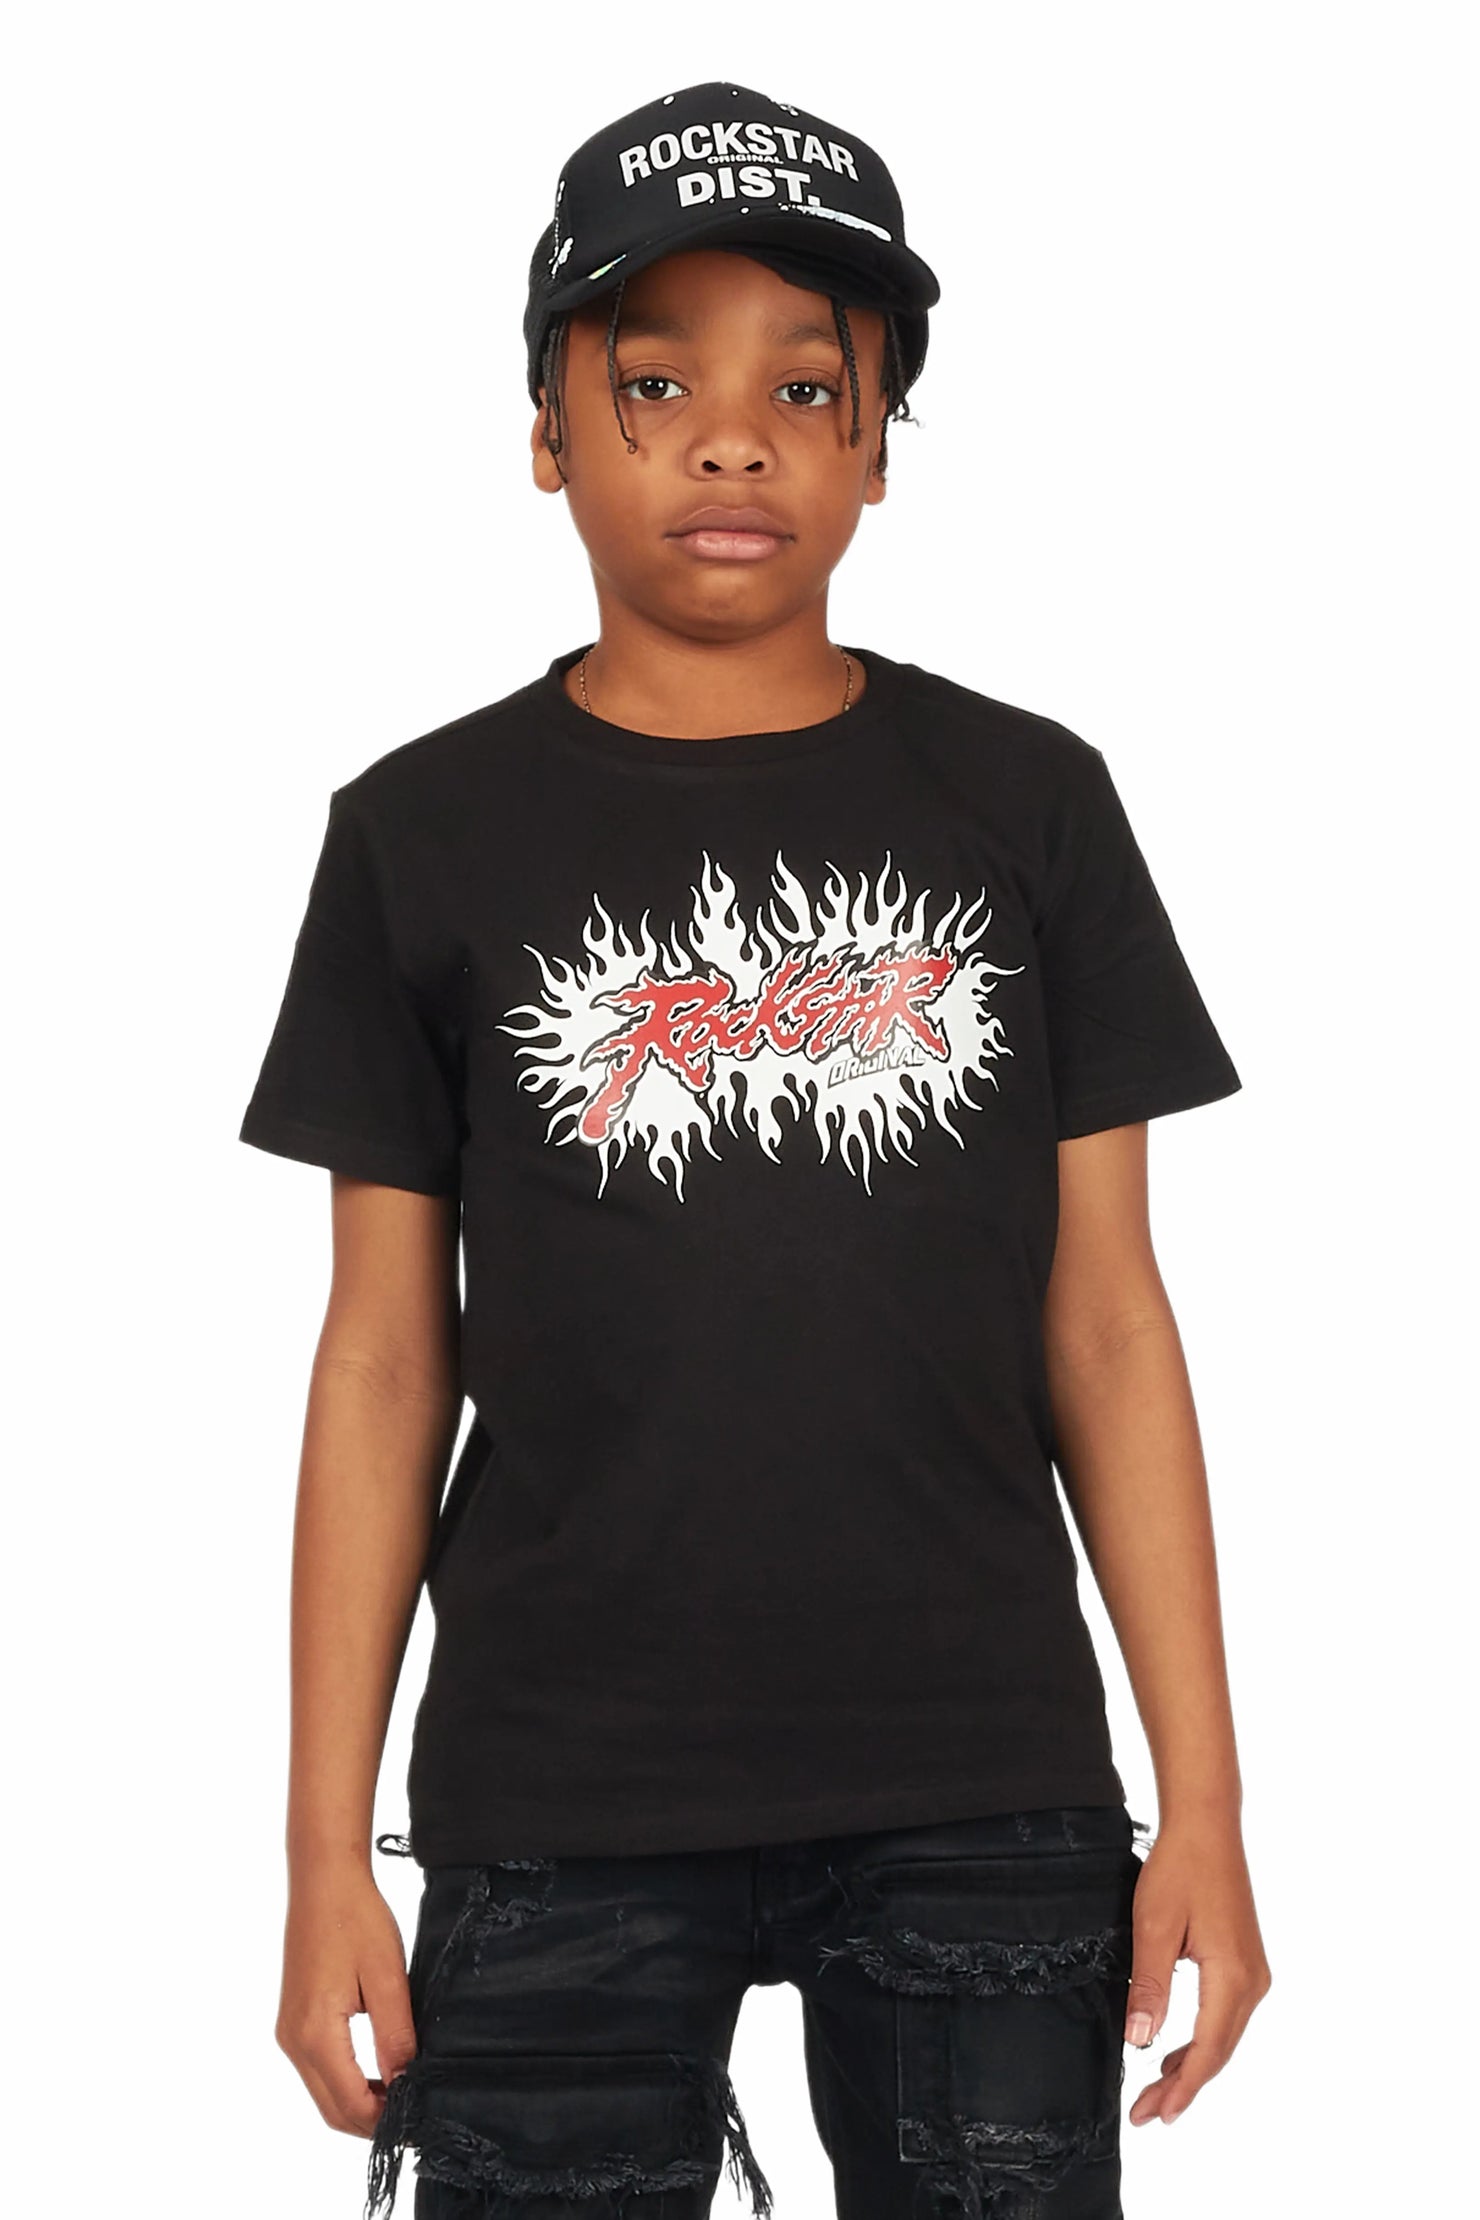 Boys Tafari Black Graphic T-Shirt